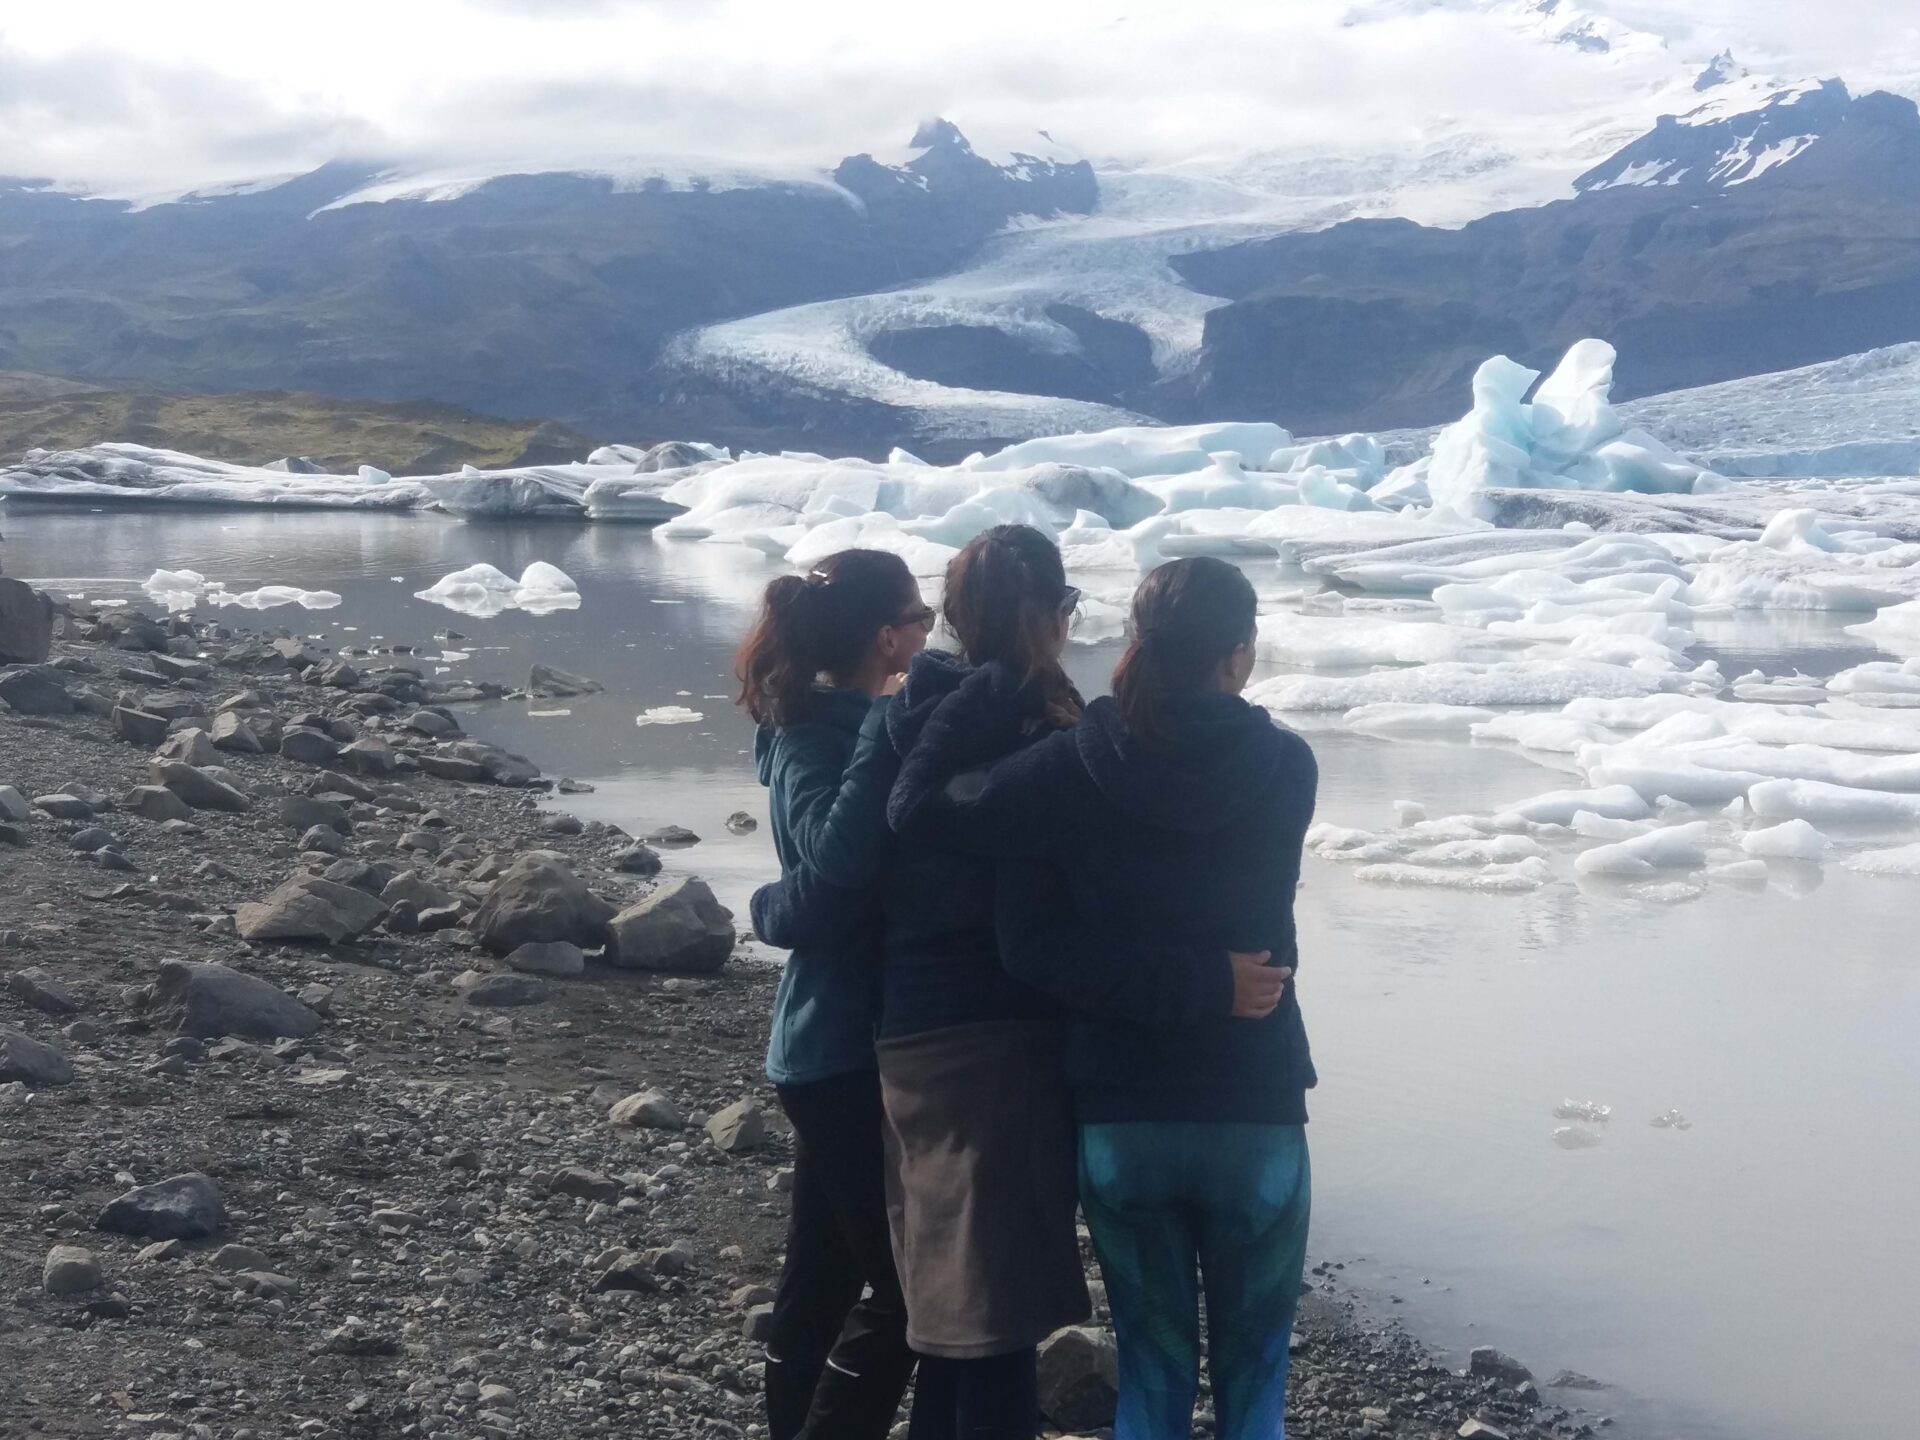 Buscar compañero de viaje para irse a Islandia: la historia de Alba, Jessica y Eva